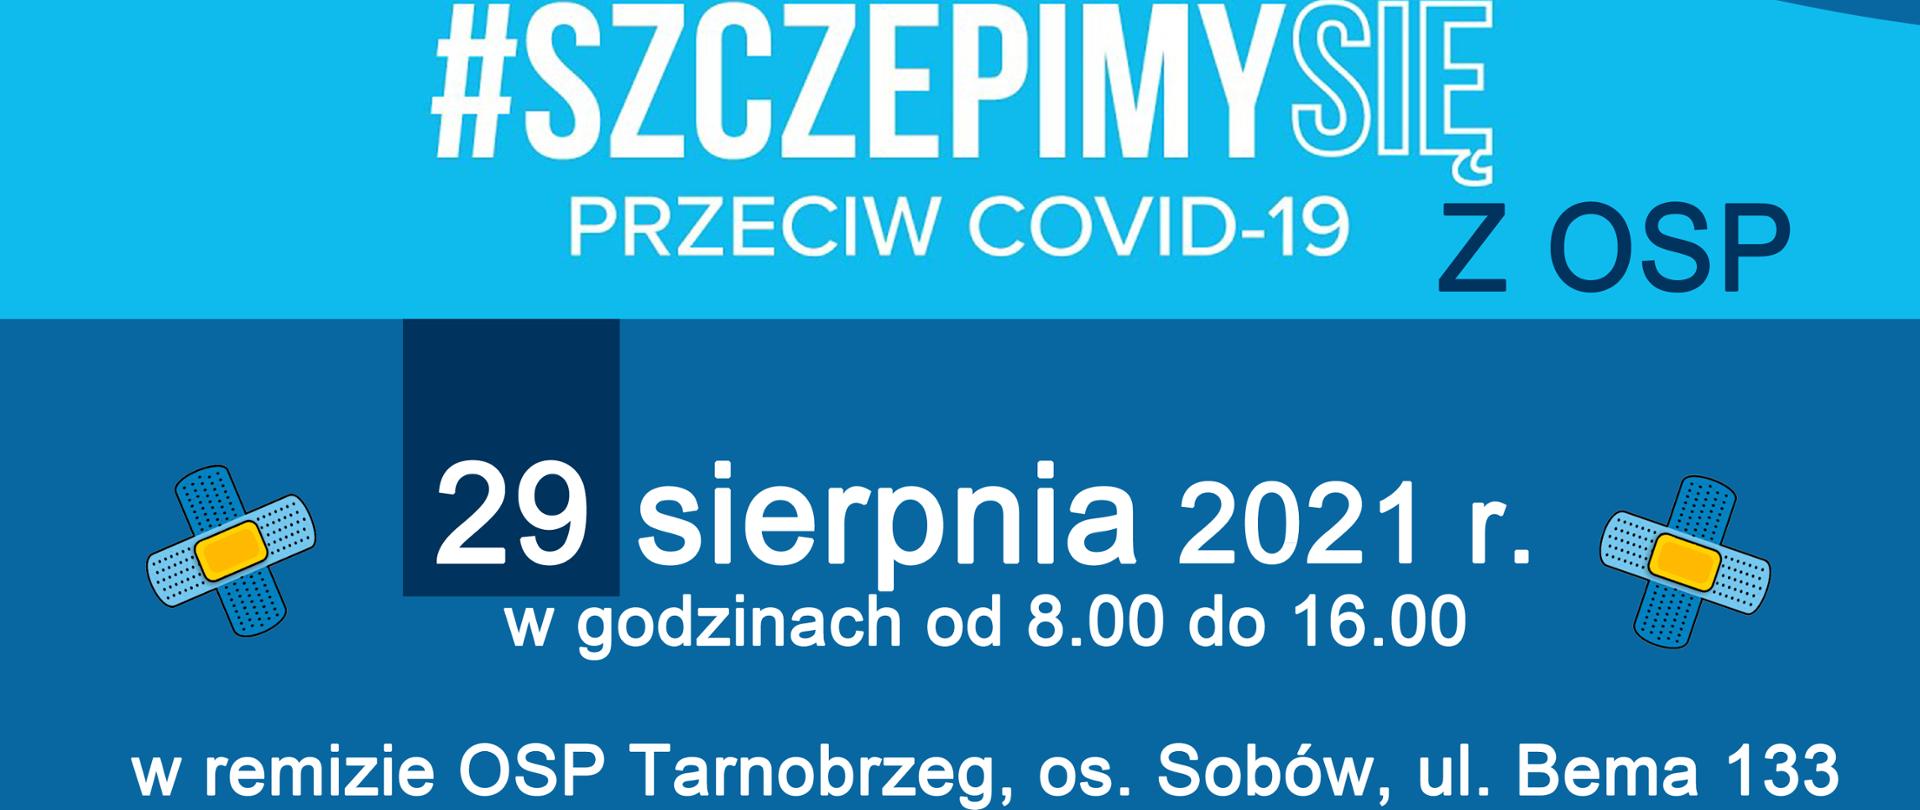 Plakat informujący o akcji #szczepmy się przeciw covid-19 z OSP, która odbędzie się dnia 29 sierpnia 2021 roku w godzinach od 8:00 do 14:00 w remisie OSP Tarnobrzeg, osiedle Sobów, ulica Bema 133, Tarnobrzeg